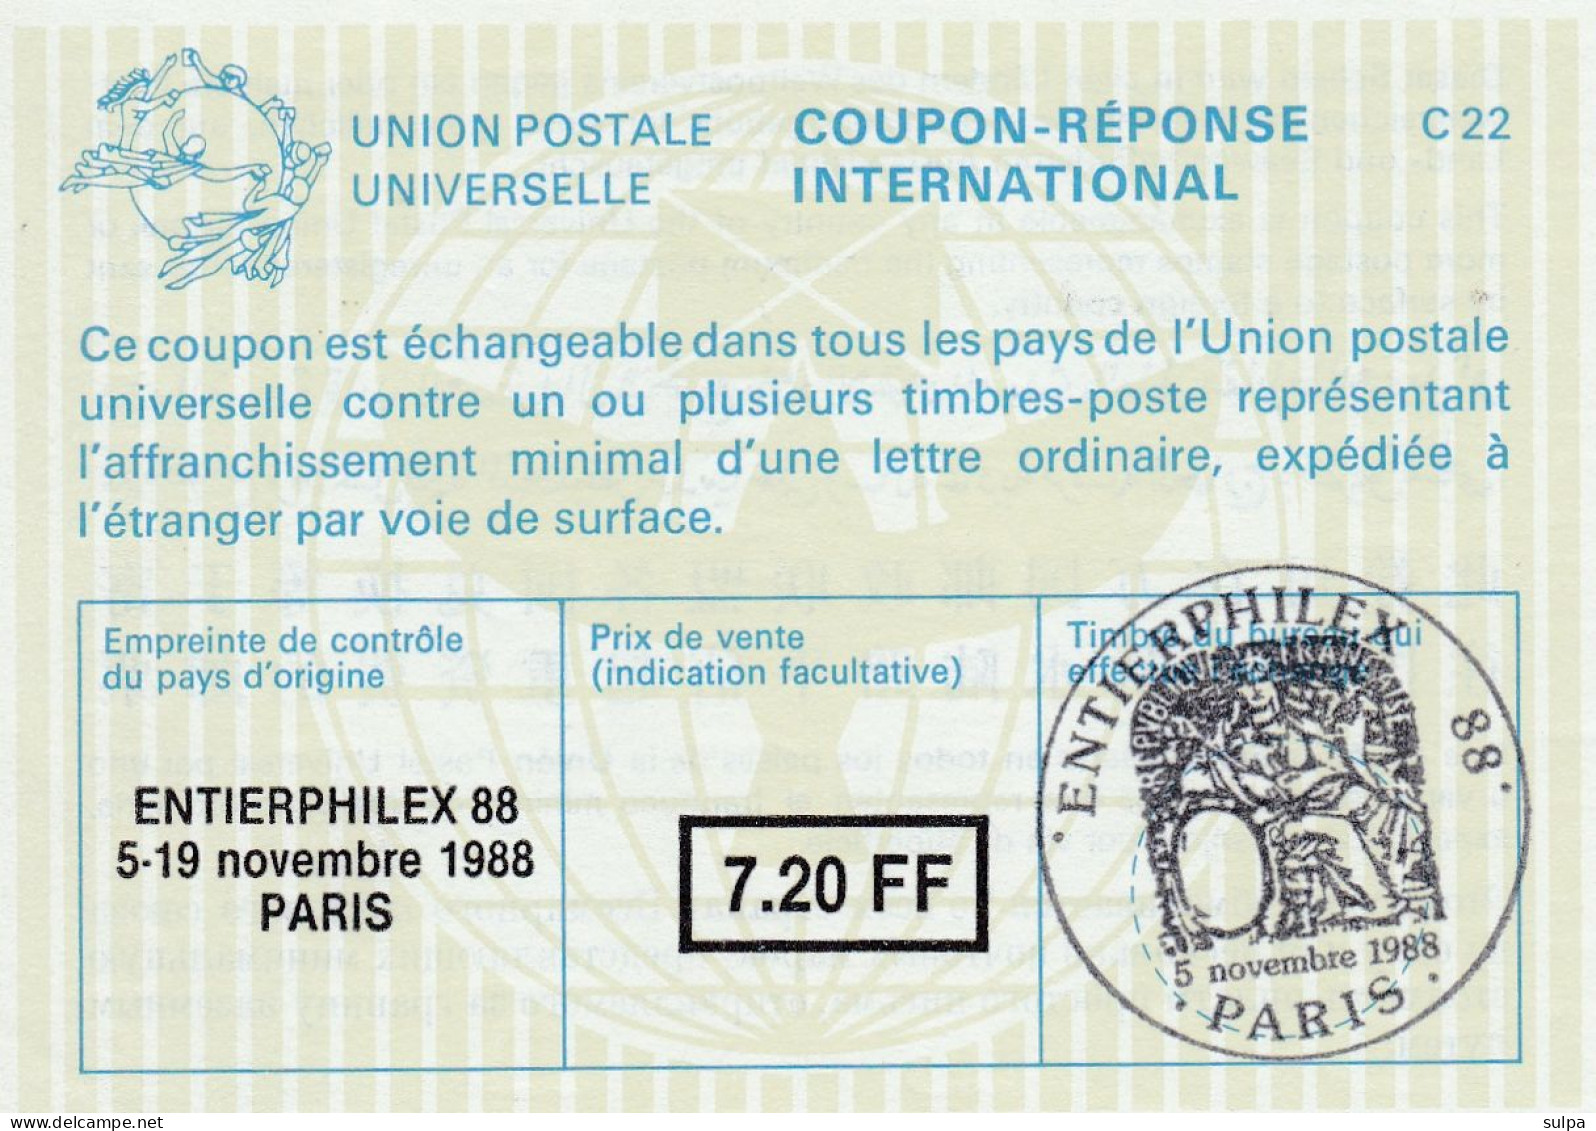 Coupon-réponse PARIS 1988 - Reply Coupons